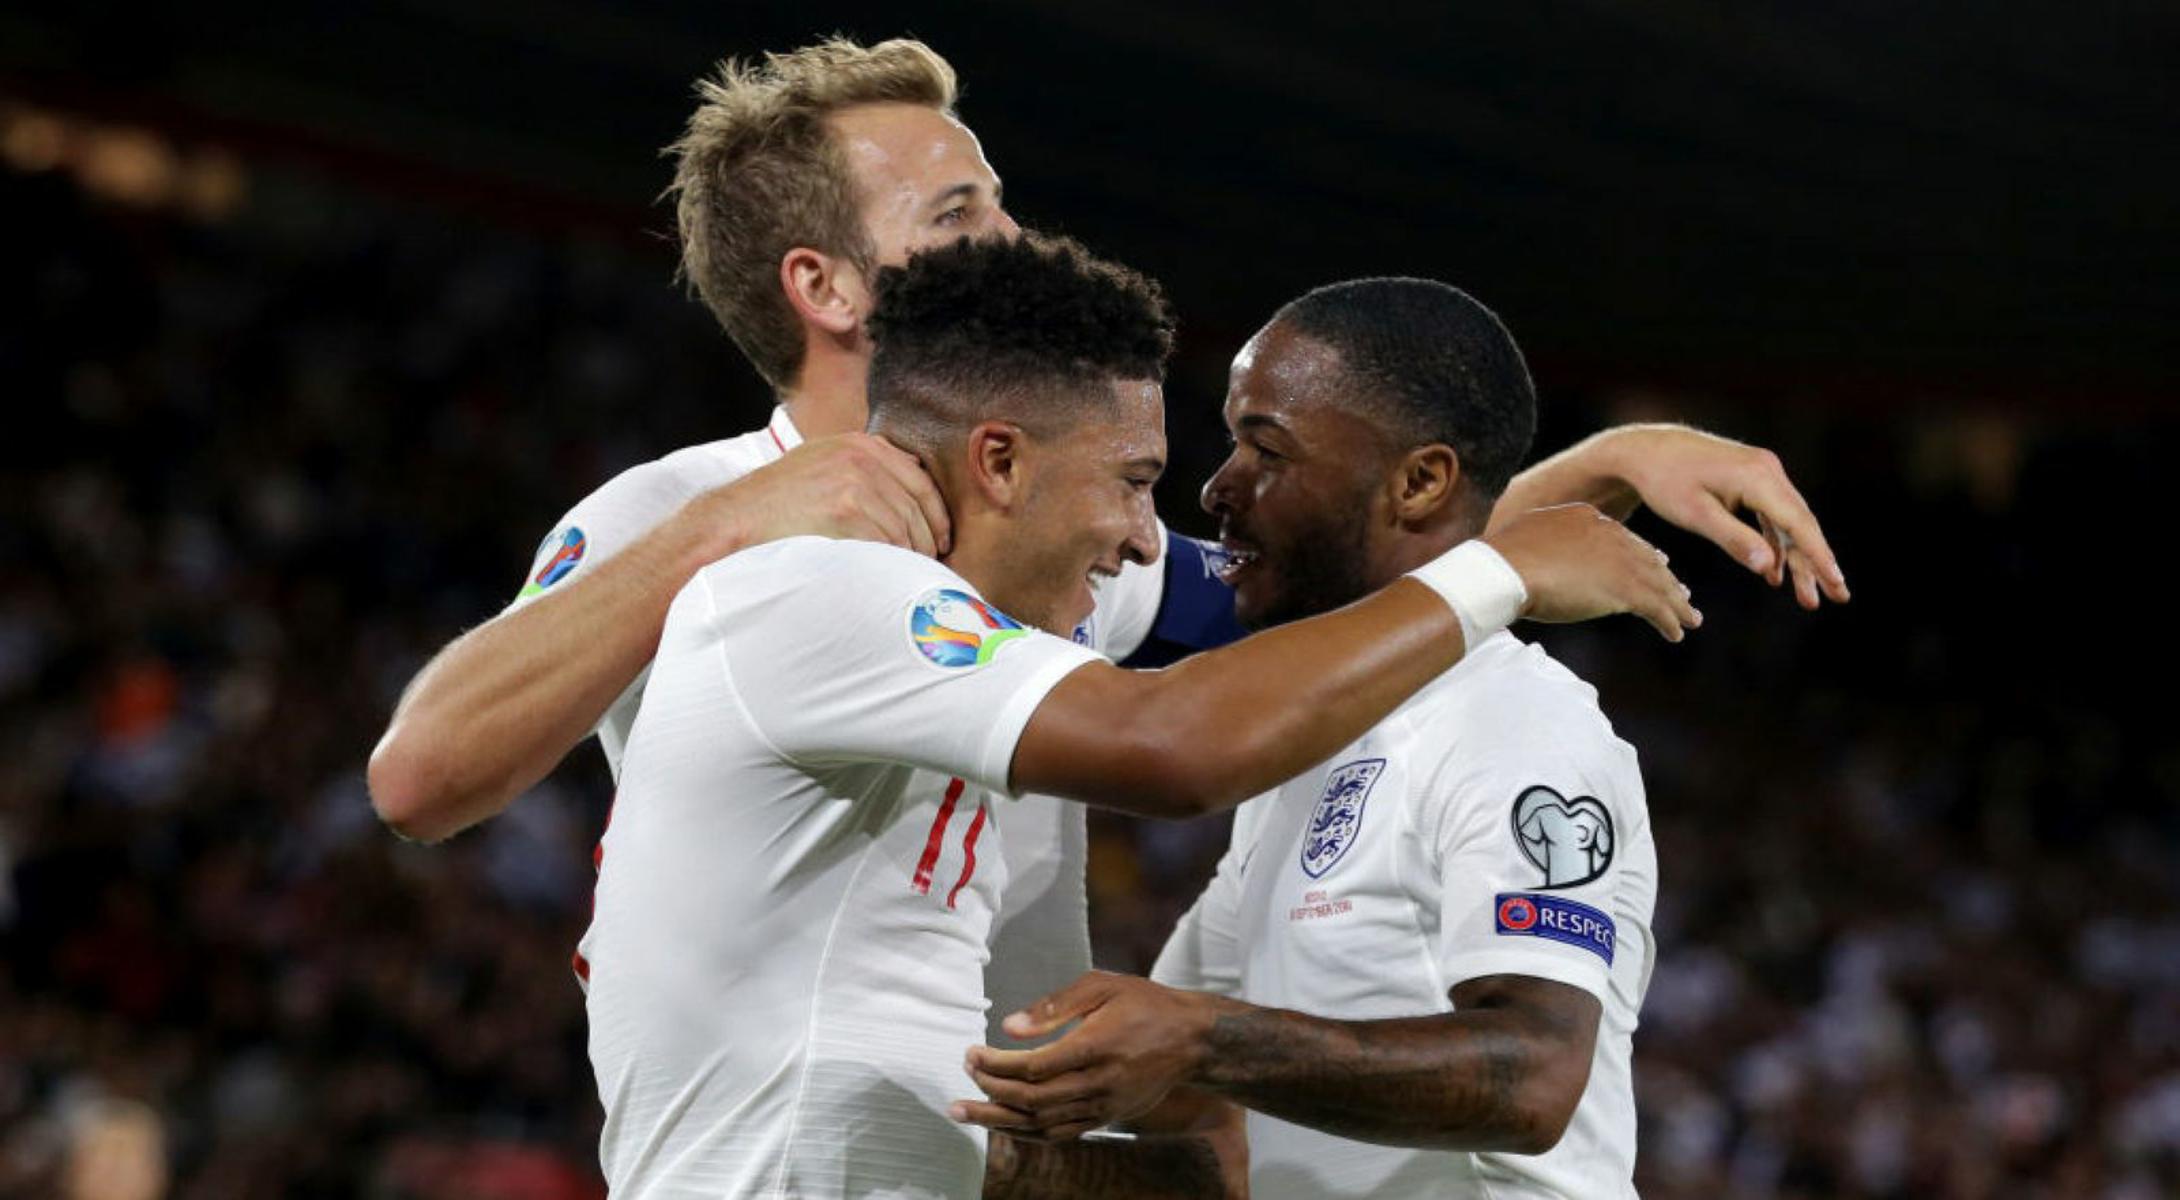 منتخب إنجلترا يُهدد بالانسحاب قبل مباراتي تصفيات يورو 2020